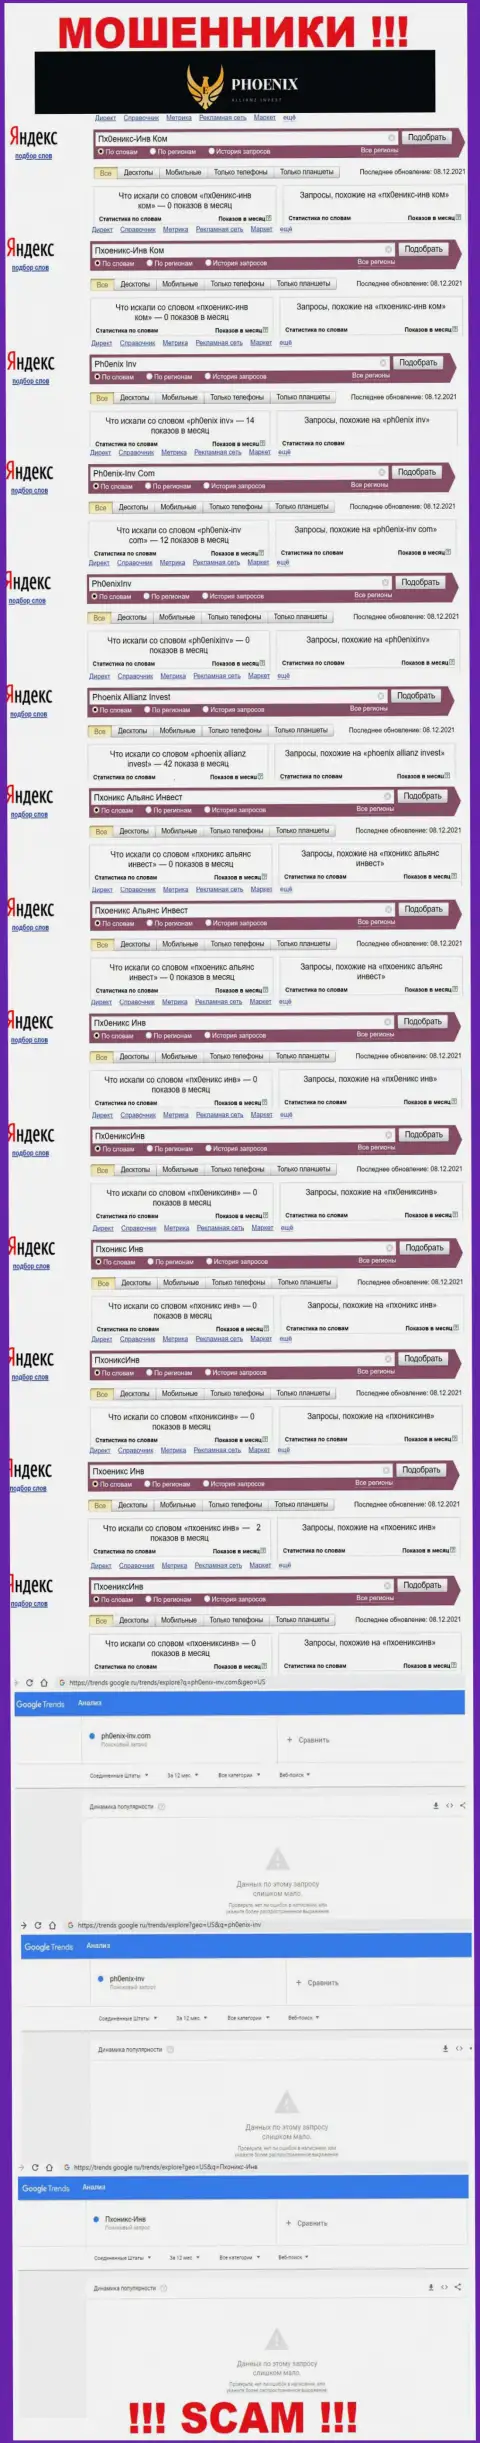 Скрин статистики online-запросов по противоправно действующей компании Пхоеникс Инв